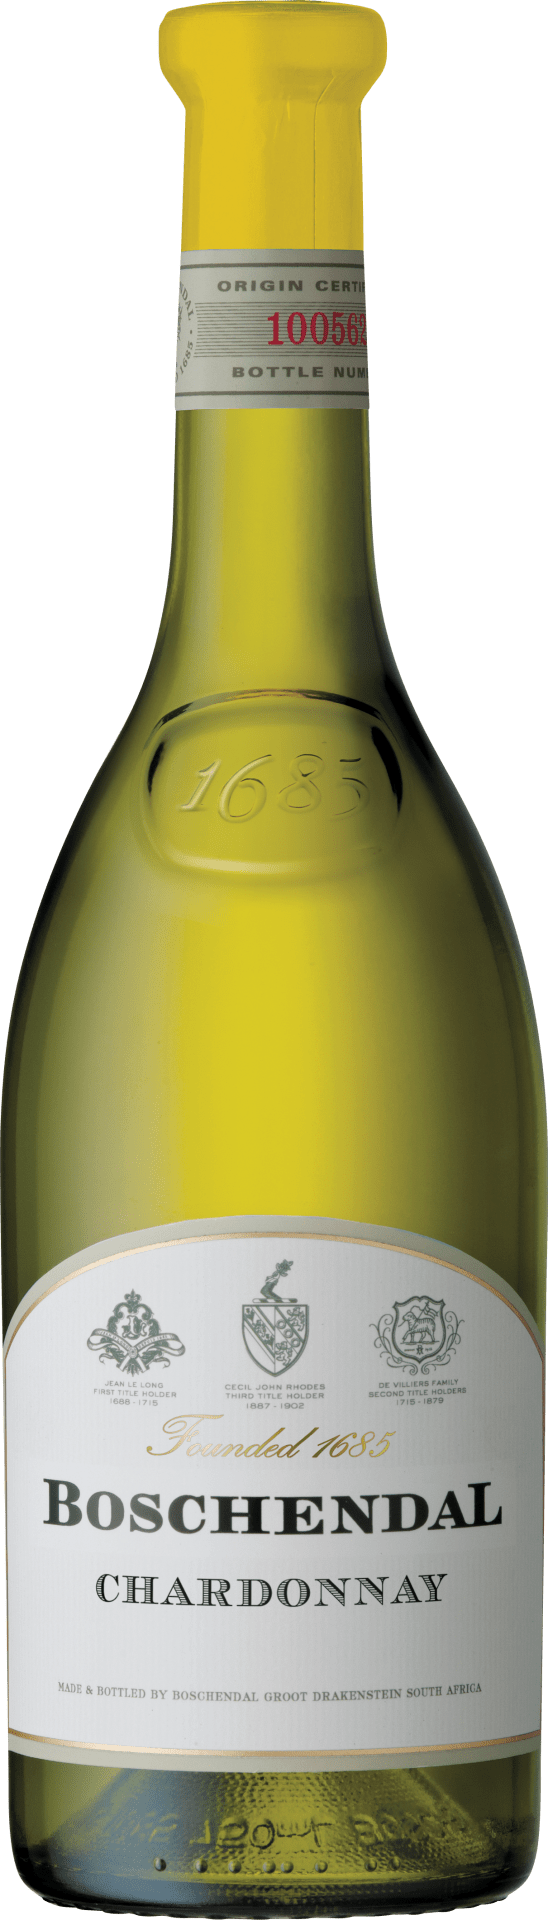 1685 Chardonnay